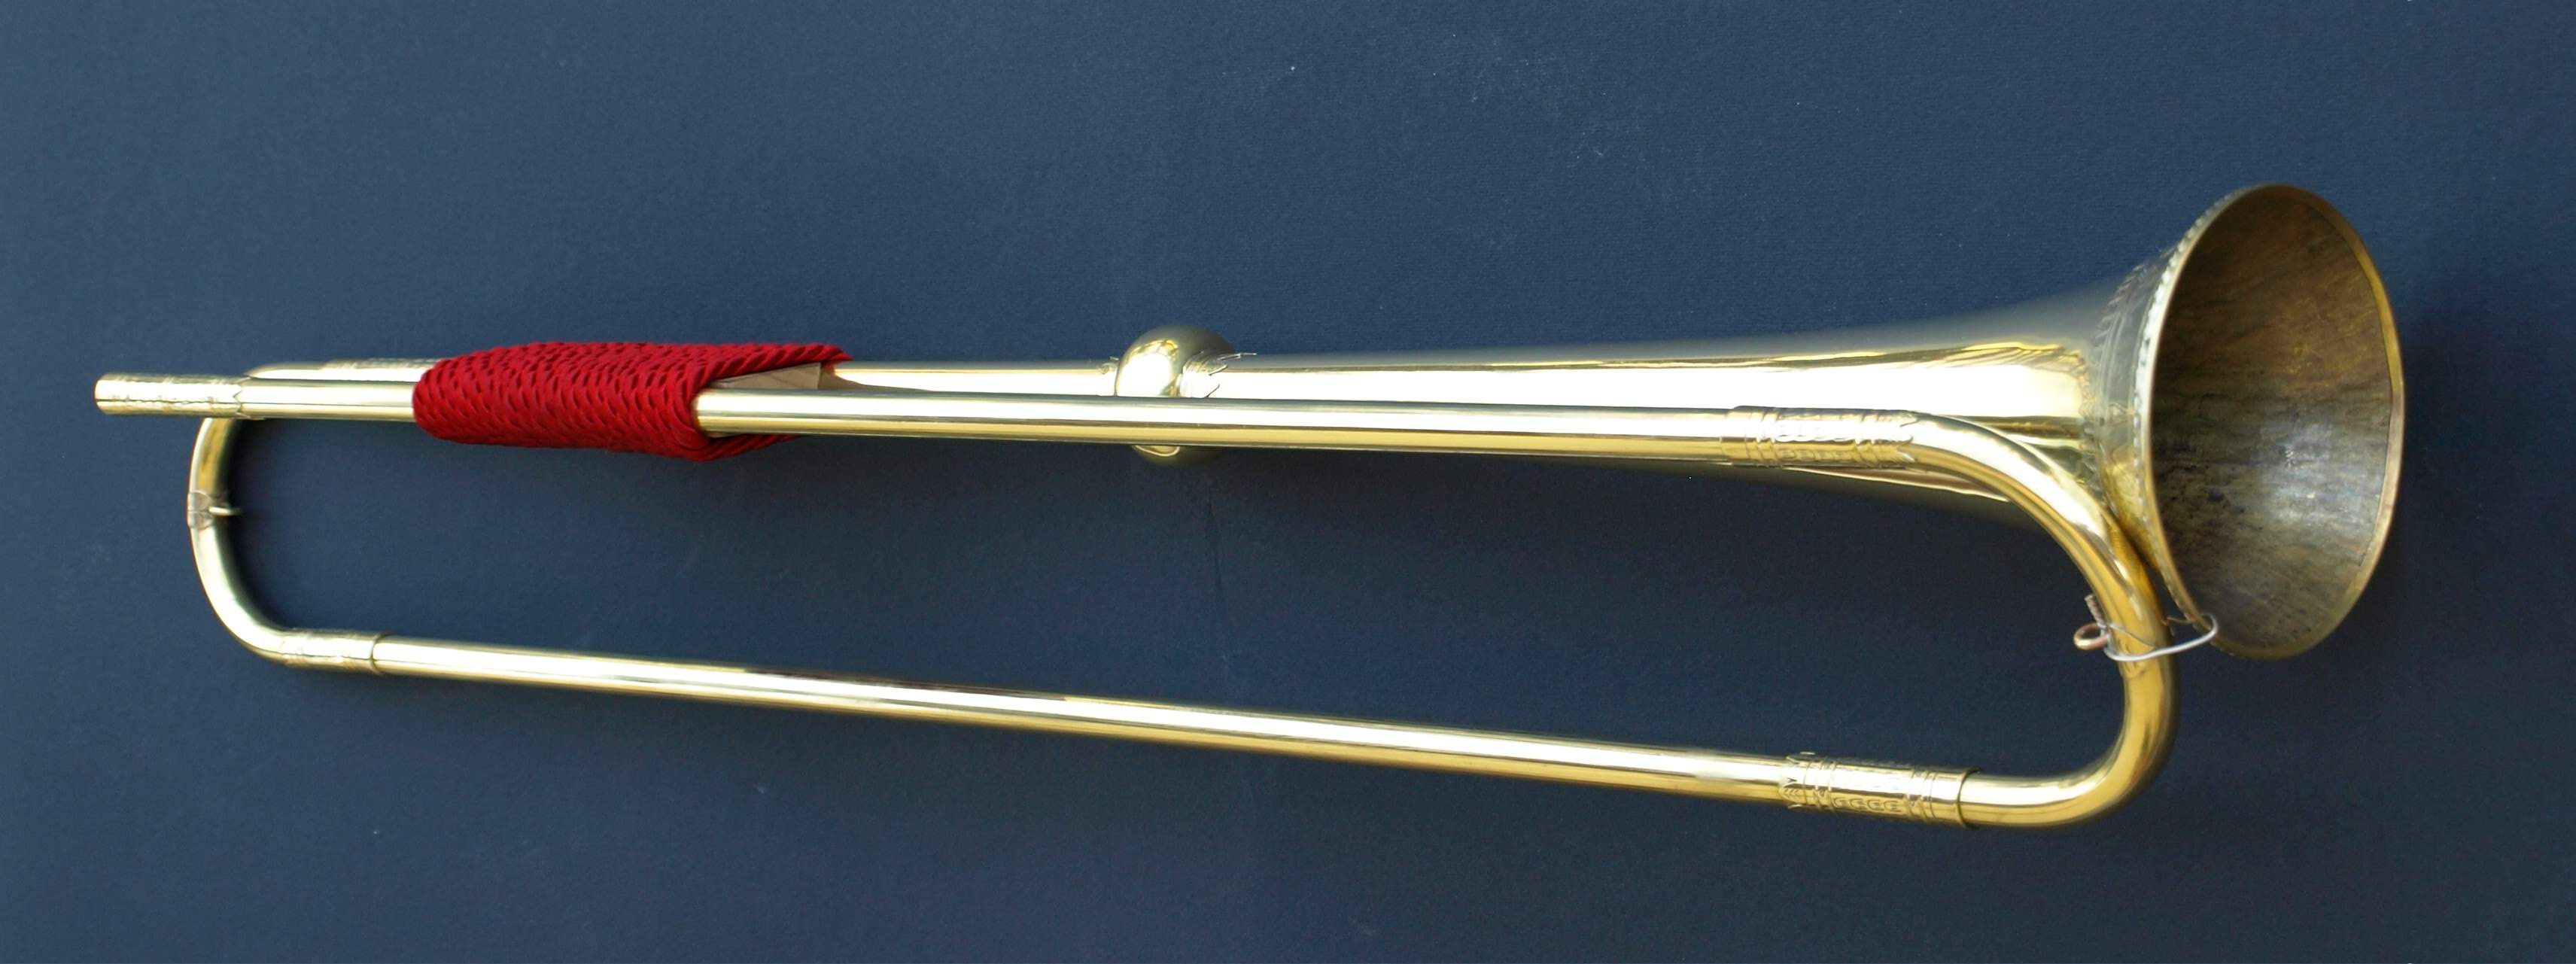 Bosc - Renaissance Natural Trumpet (Decoration by Hand)